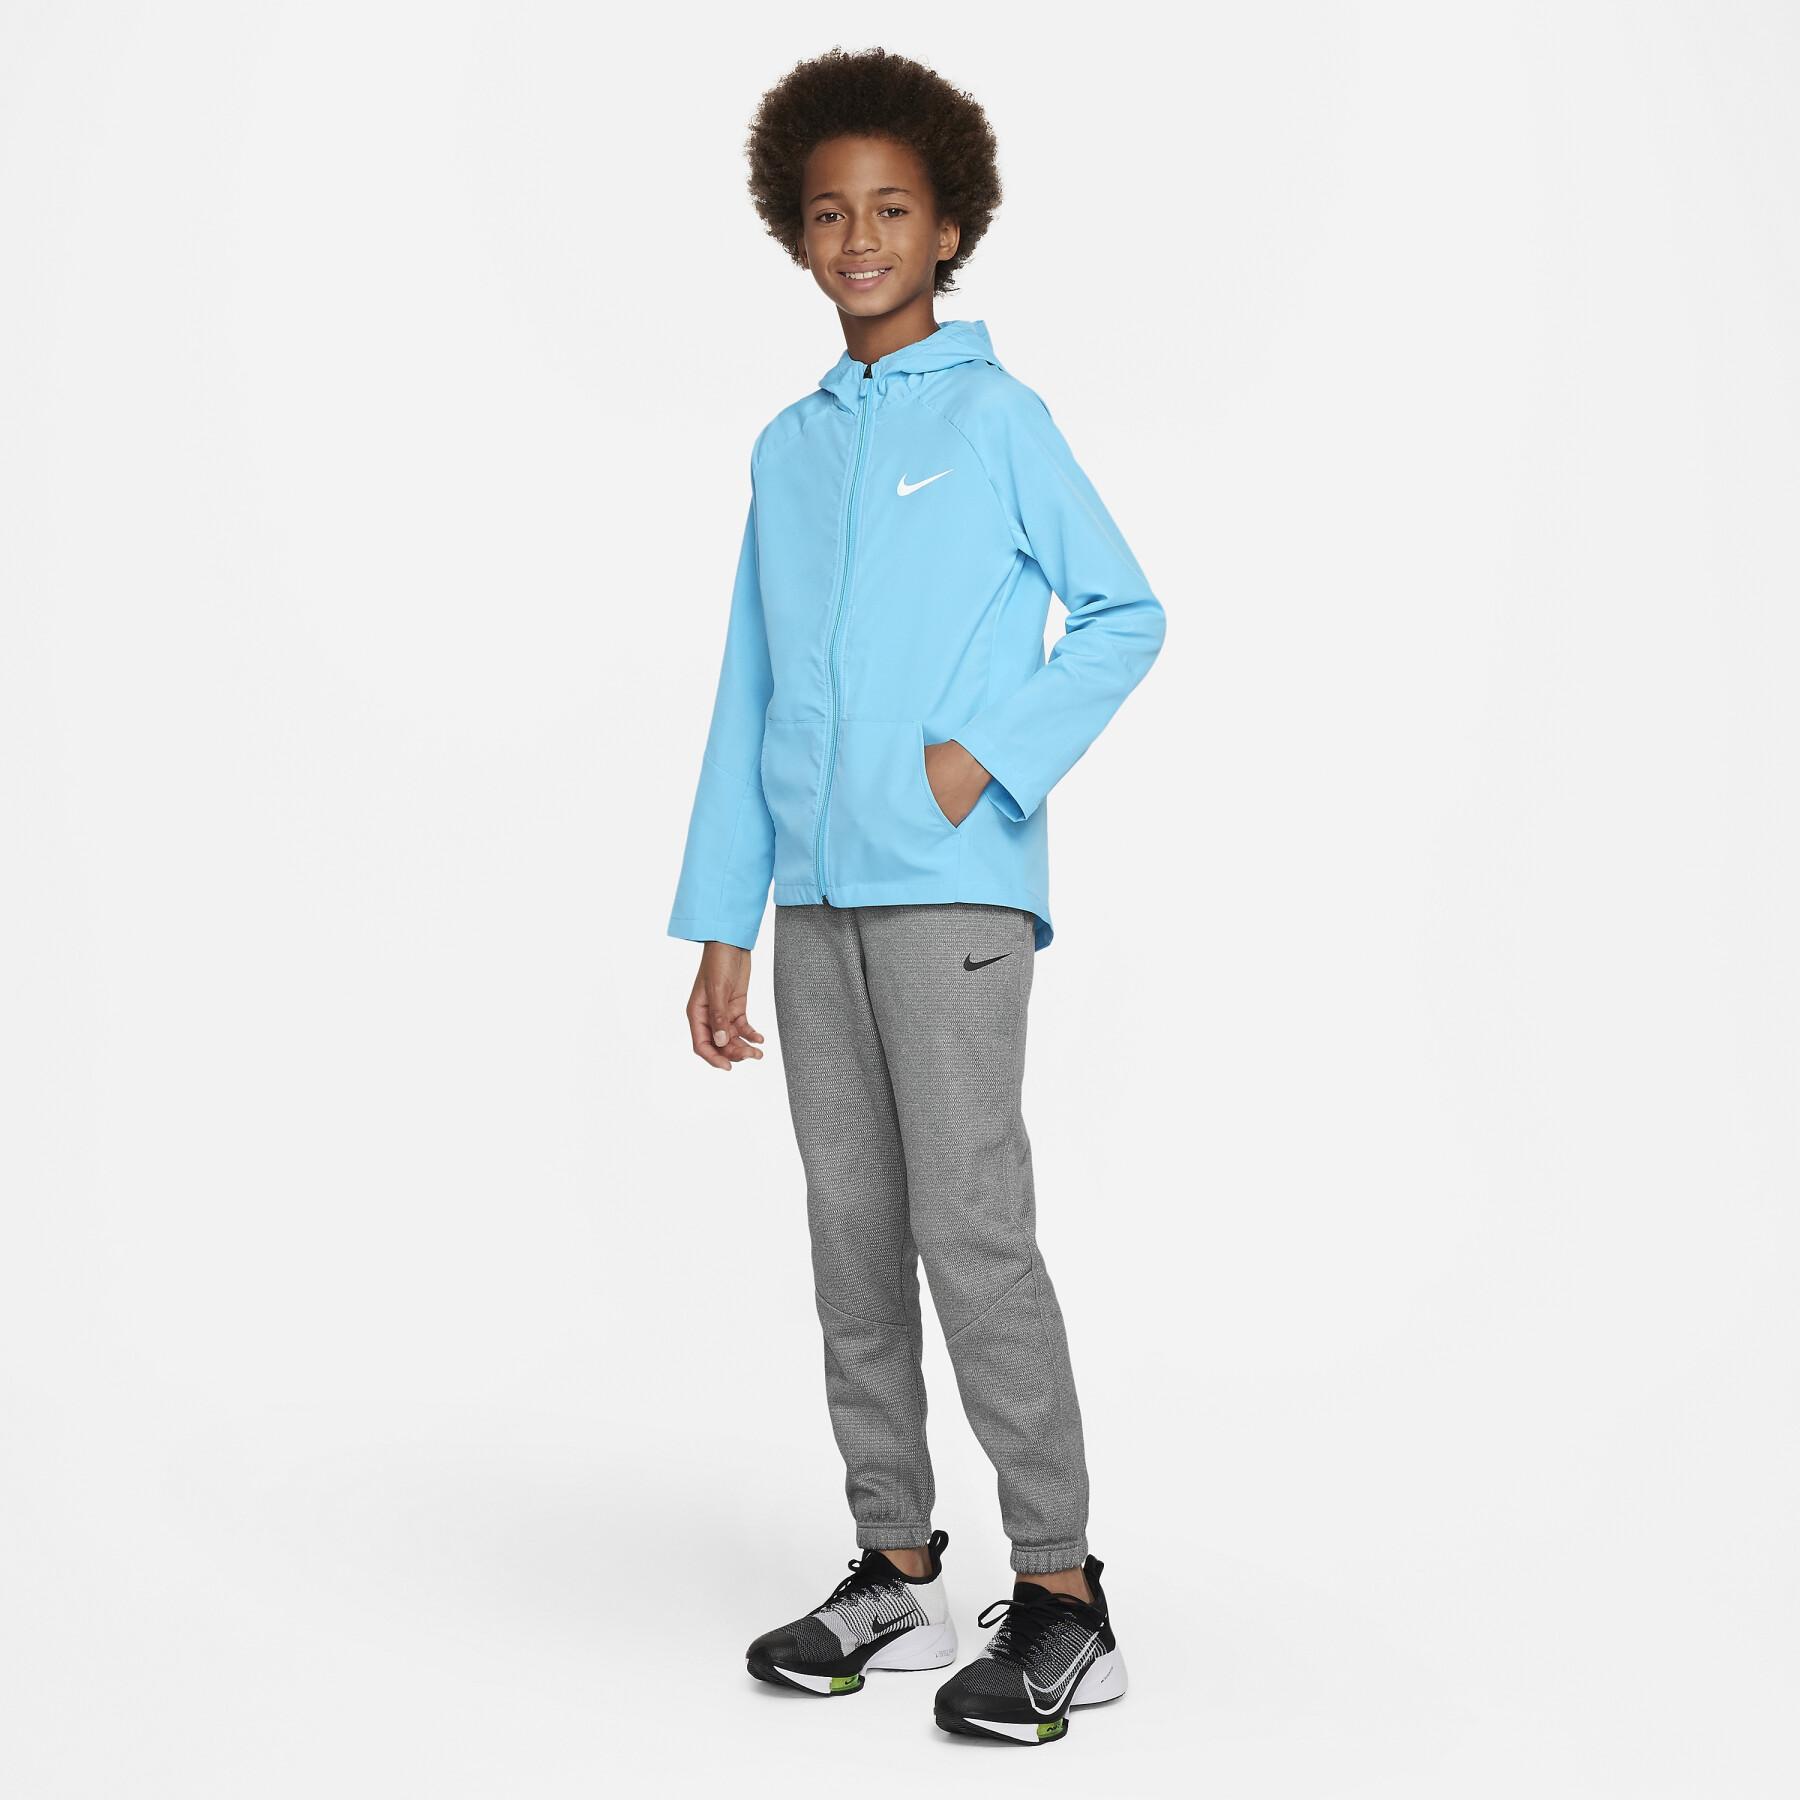 Waterproof jacket for children Nike Dri-Fit